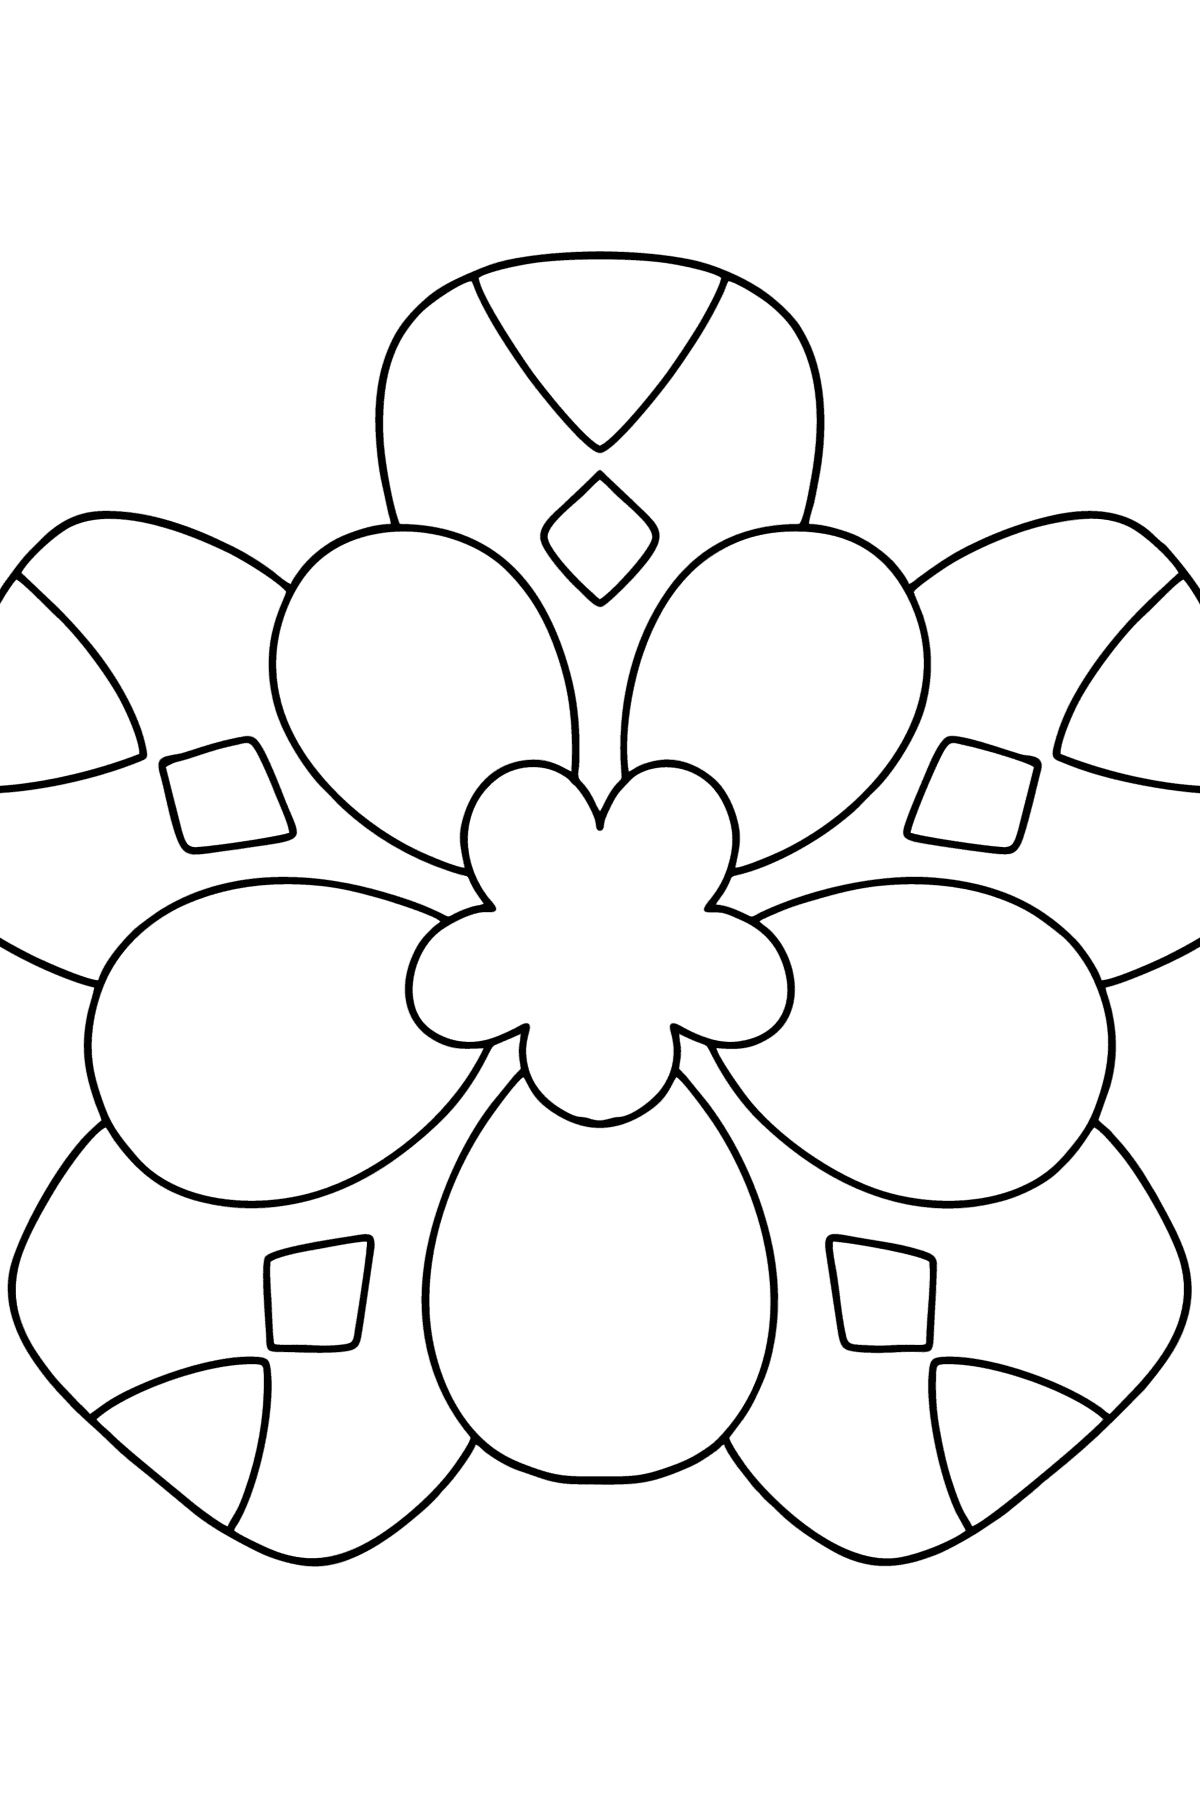 Ausmalbild Mandala Blume für Kinder - Malvorlagen für Kinder